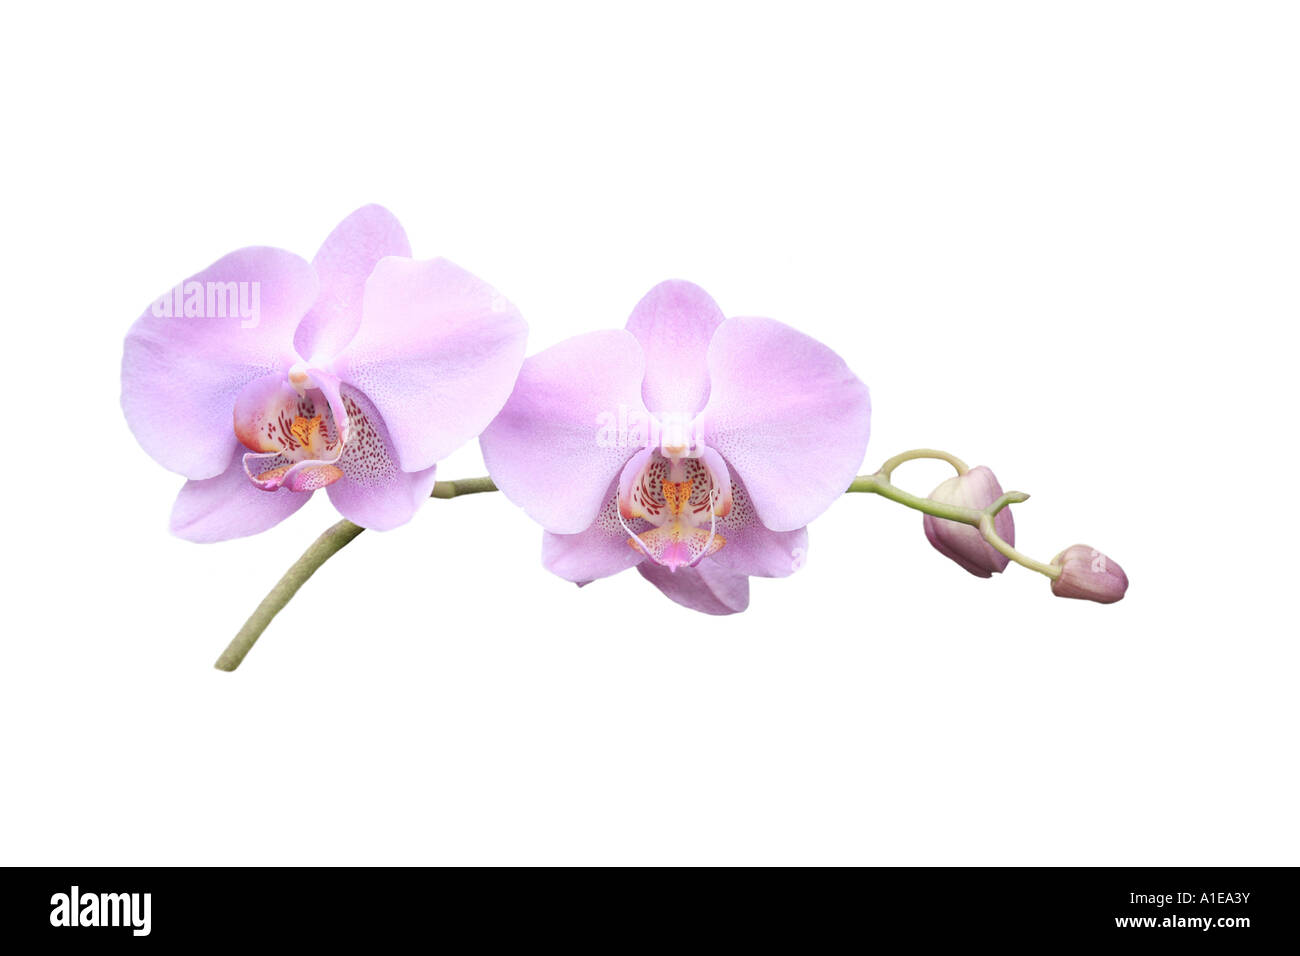 Moth orchid (Phalaenopsis ibrido), ordine di sviluppo dei Fiori, Foto serie 6/9 Foto Stock